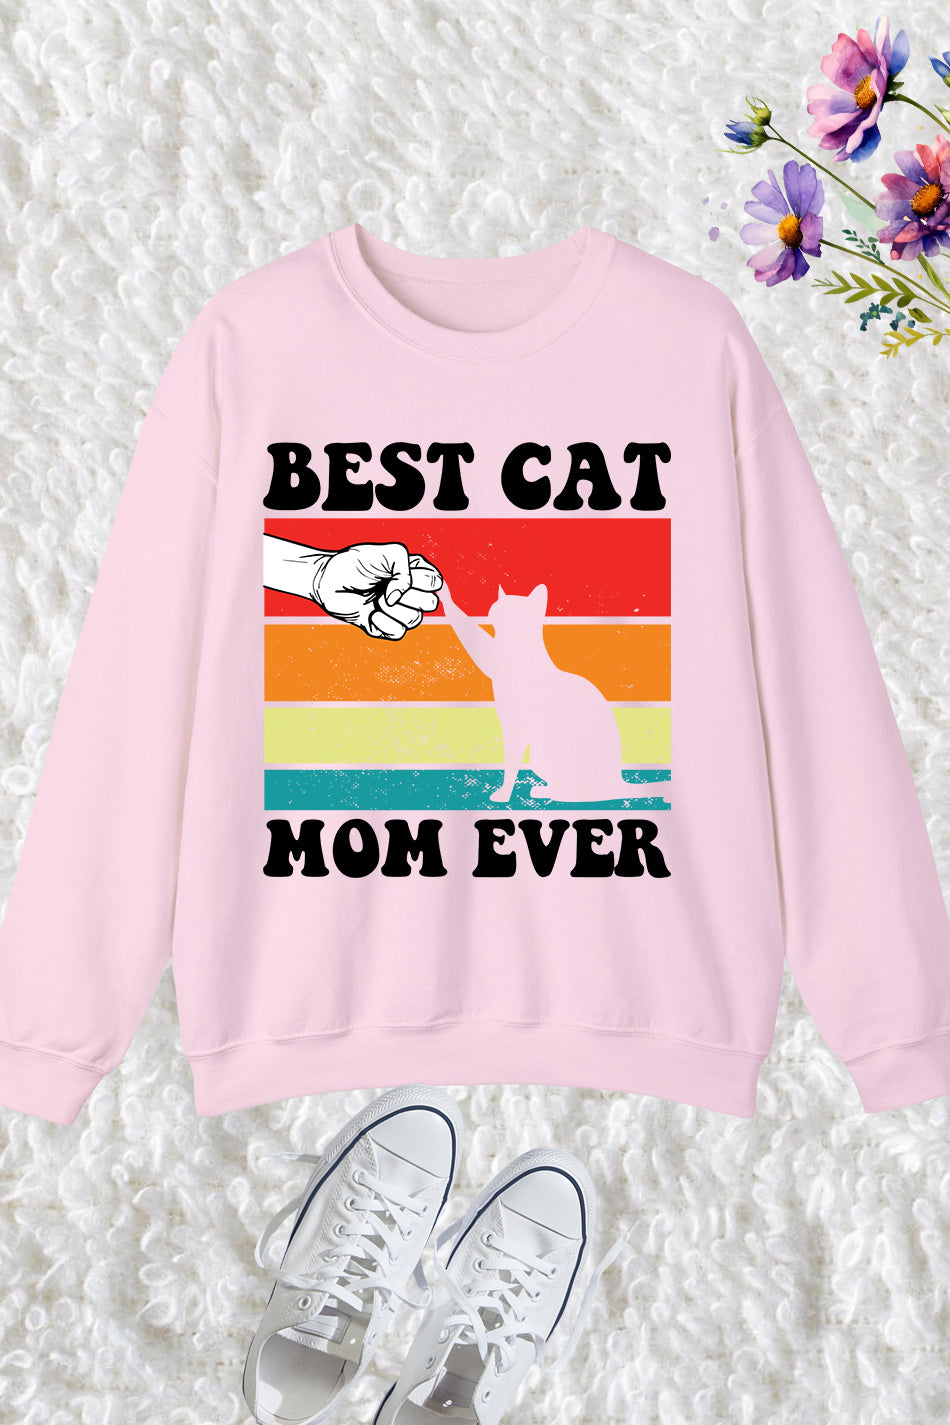 Best Cat Mom Ever Sweatshirt